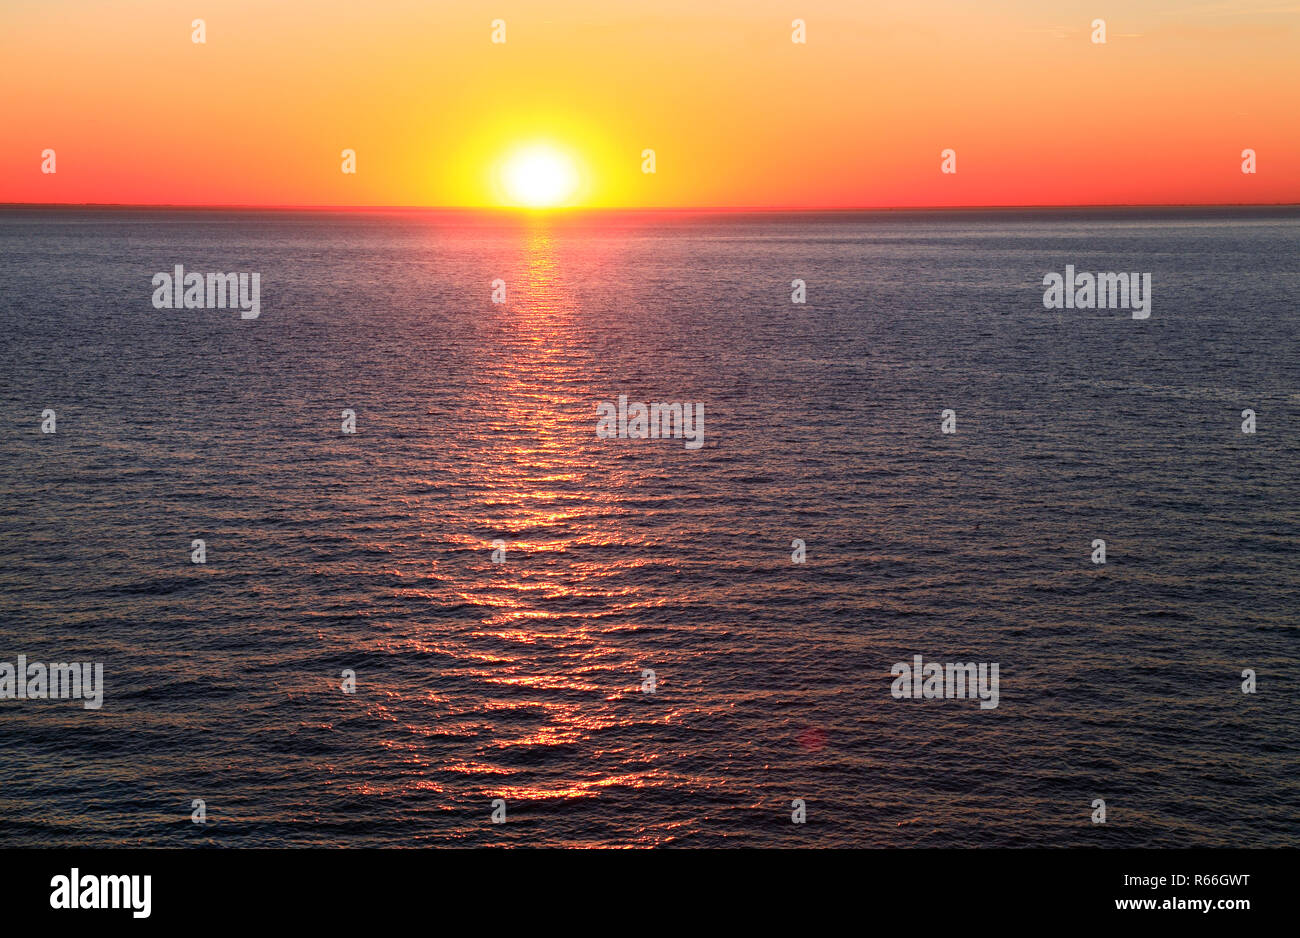 Sonnenuntergang, Meer, rot, orange, Himmel, das Waschen, Nordsee, Sun Ray, auf dem Wasser, nach Westen Küste, Norfolk, Großbritannien Stockfoto